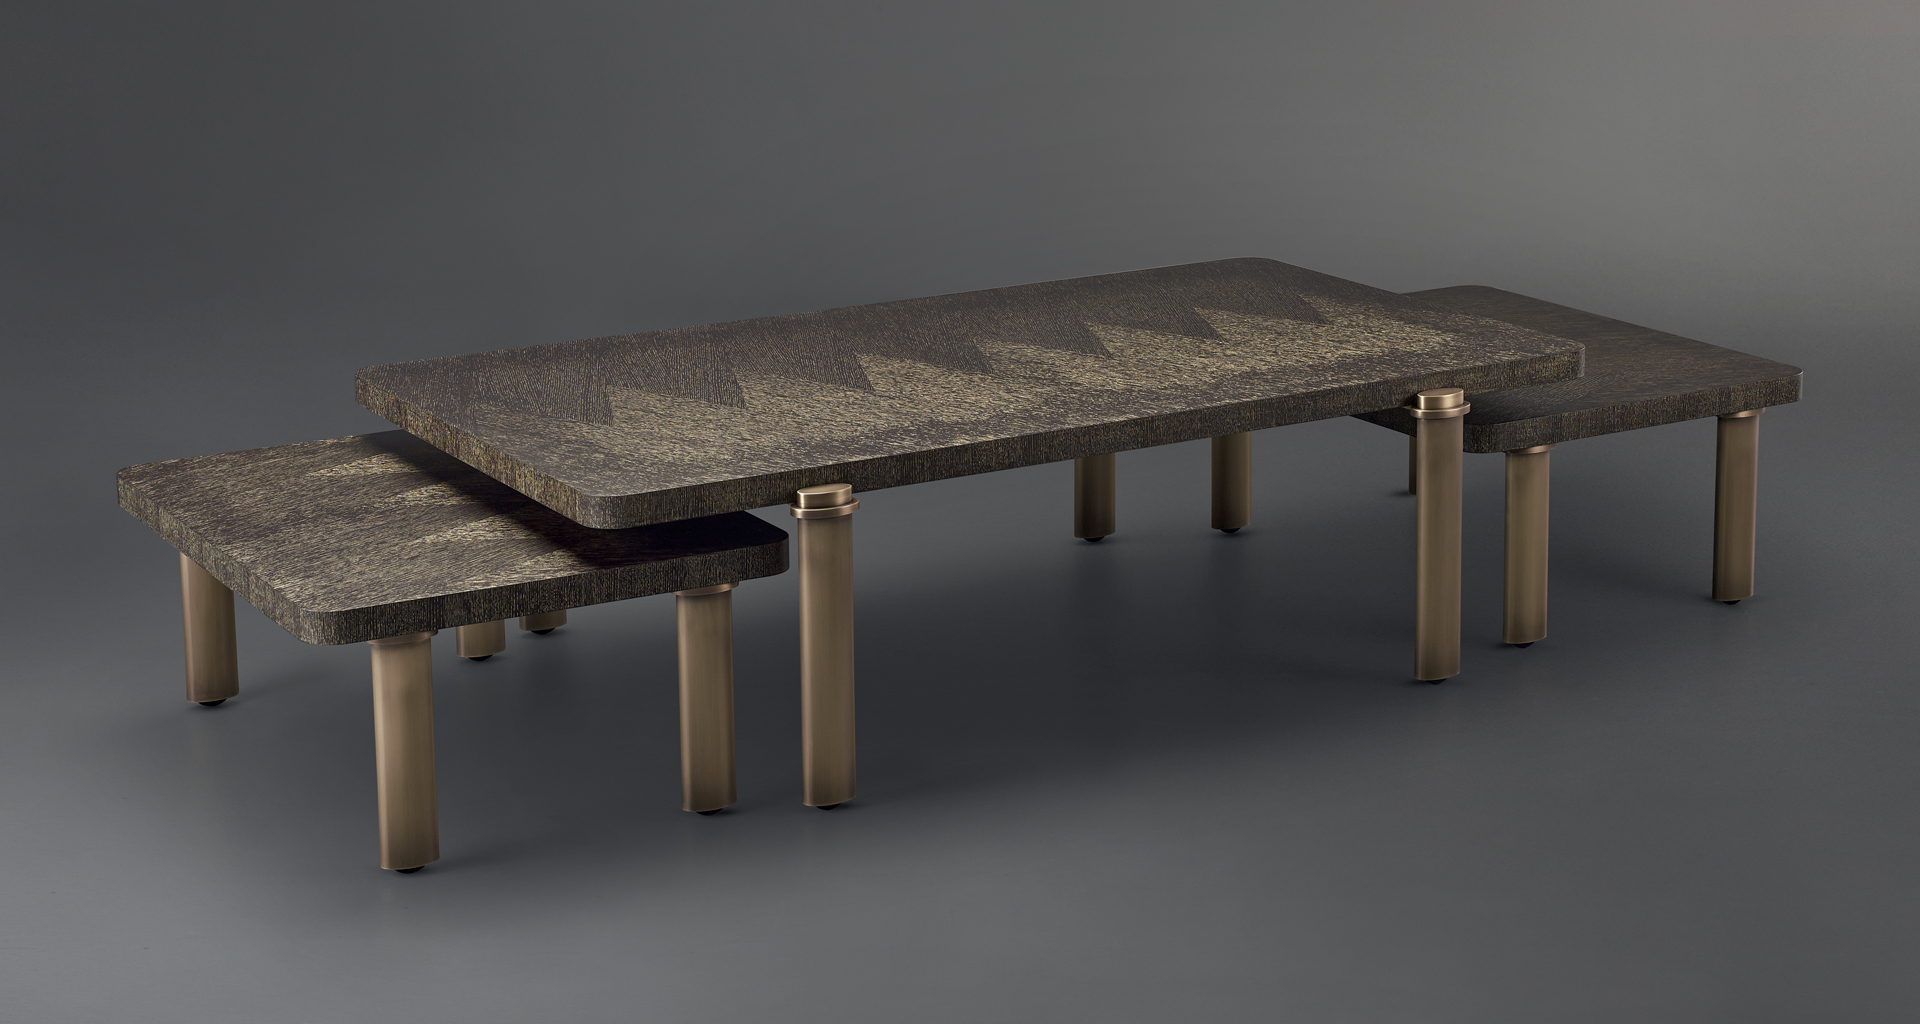 Passepartout sono due tavoli bassi in legno con decorazioni in bronzo, del catalogo di Promemoria | Promemoria